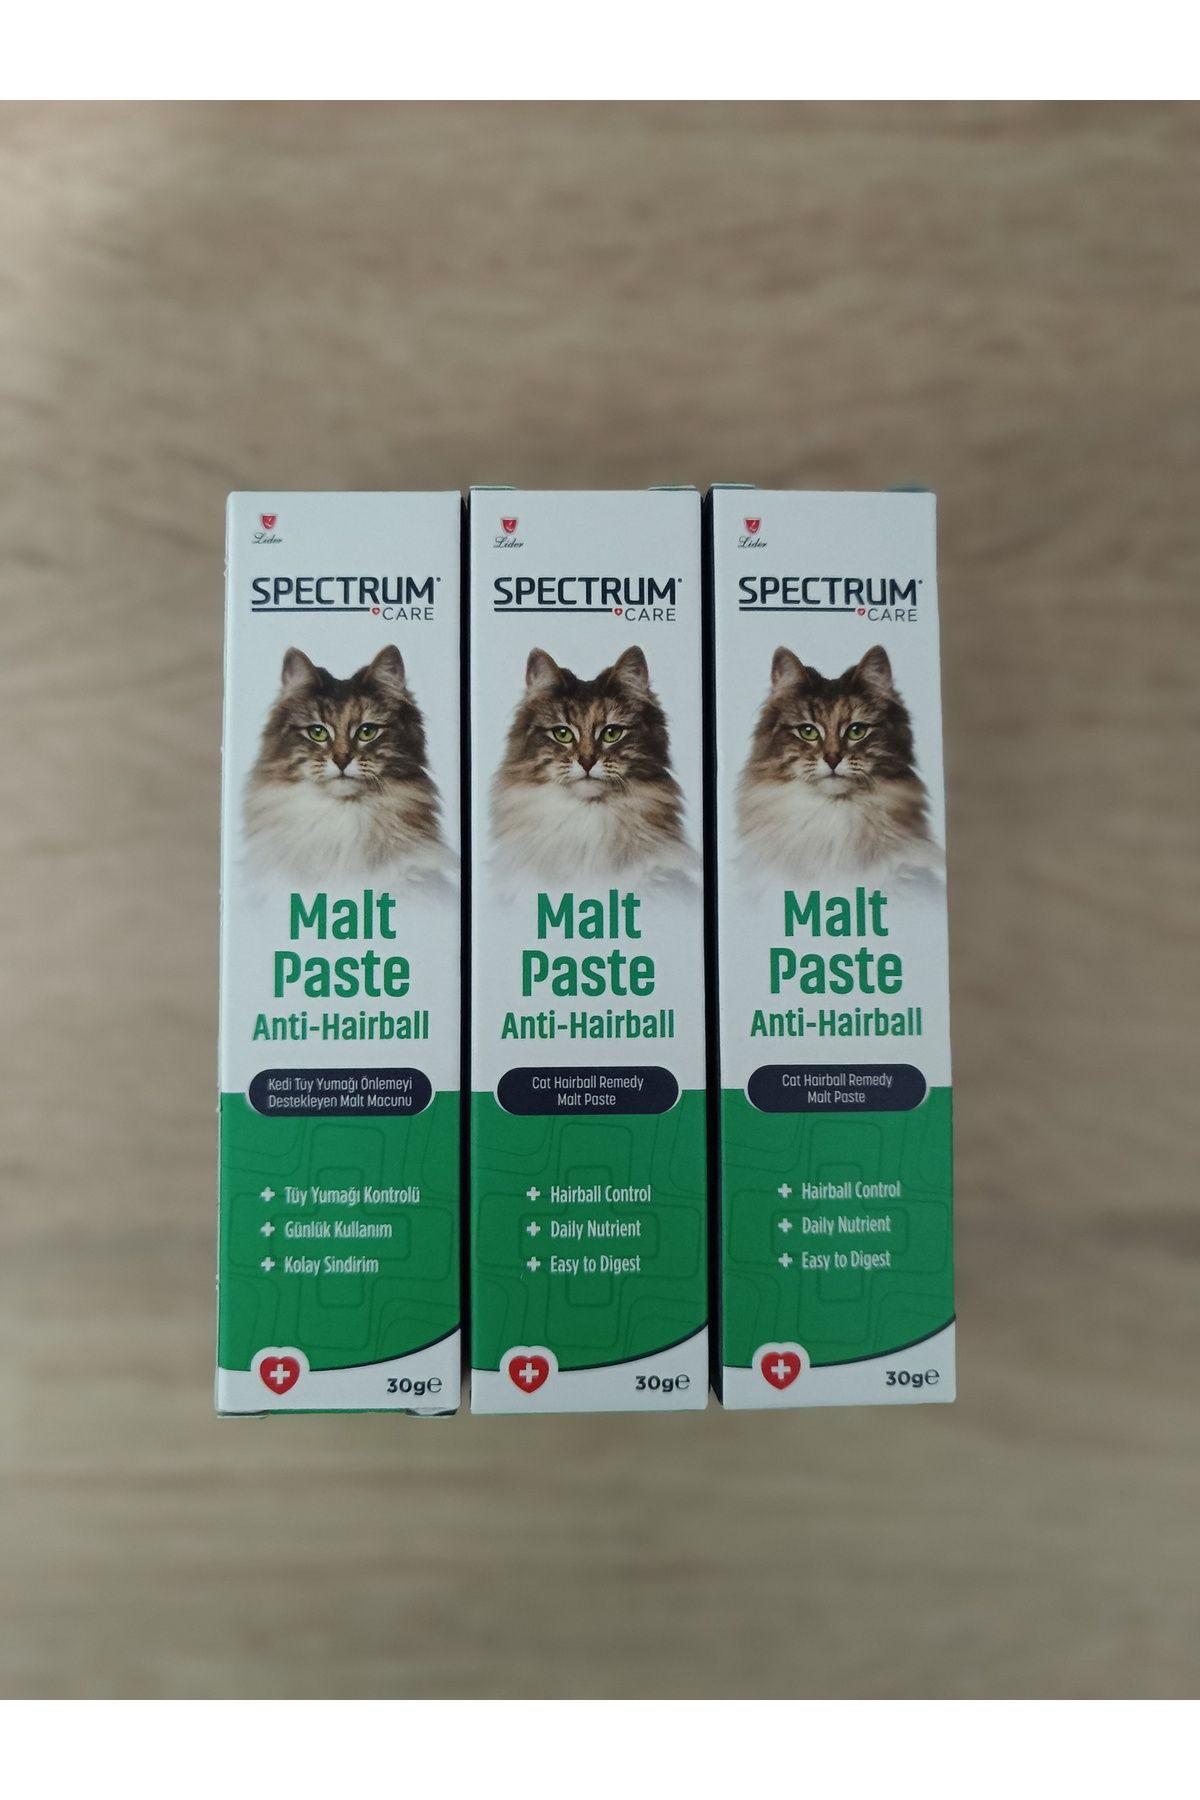 Spectrum care kedi tüy yumağı önleyici malt paste 30gr (3 adet)